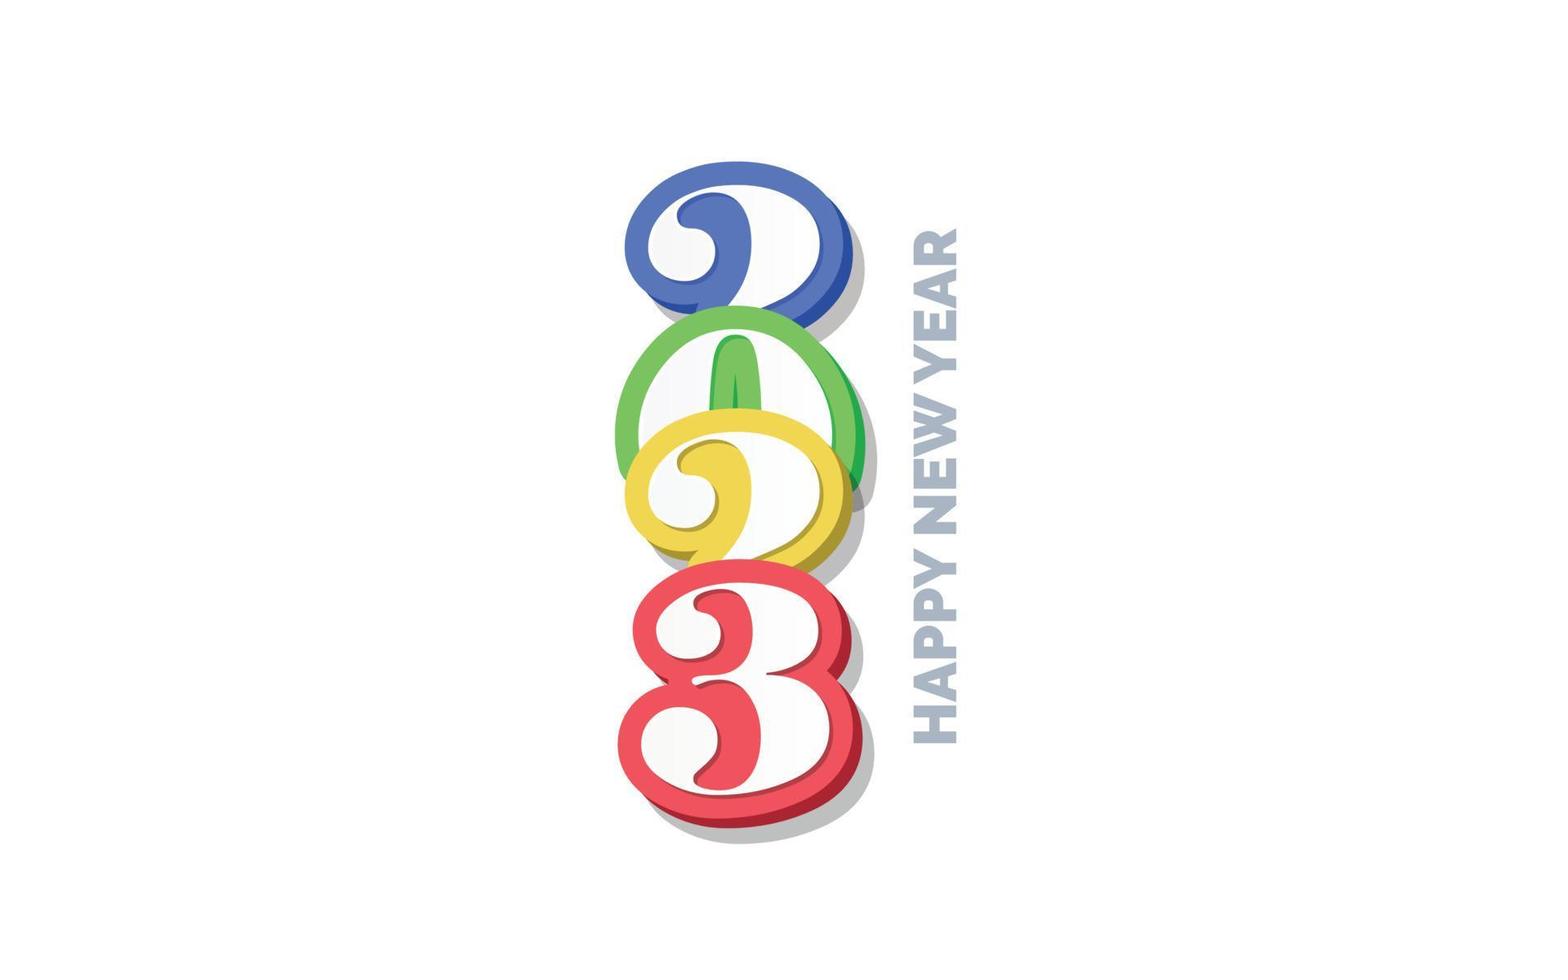 Création de logo 3d bonne année 2023 vecteur